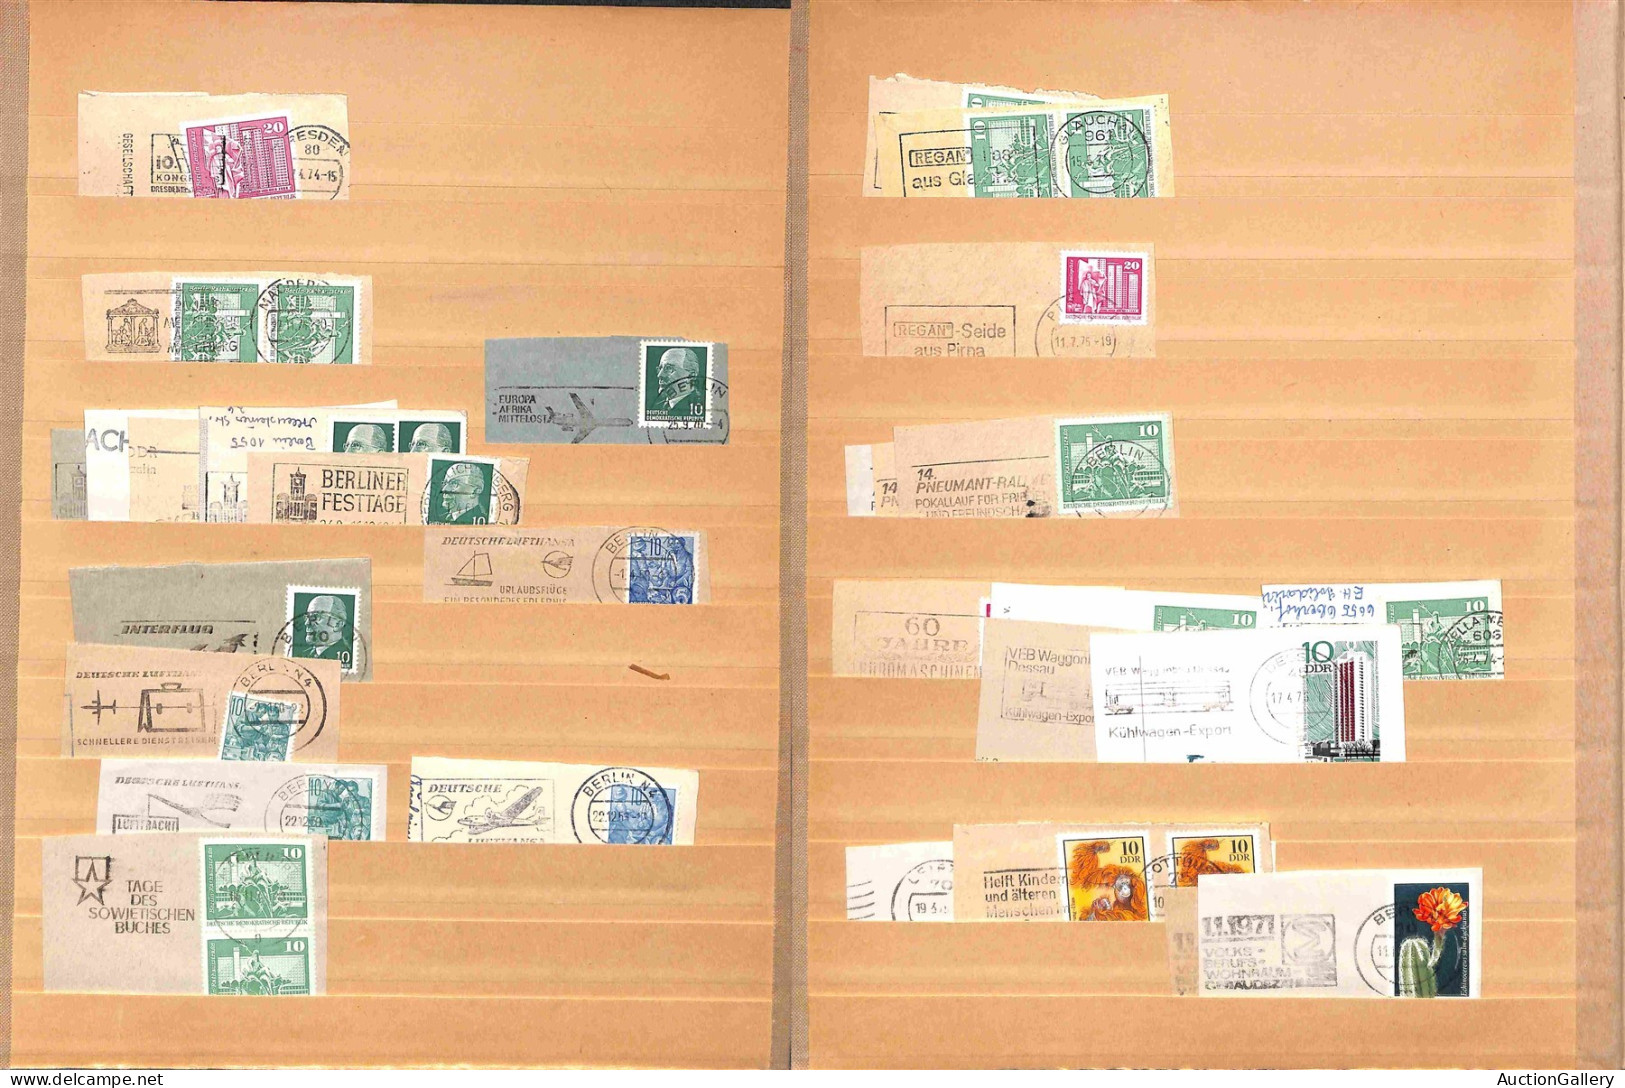 Lotti&Collezioni - Europa&Oltremare - GERMANIA DDR - circa 1950/1990 - 16 grandi pagine di classificatore con centinaia 